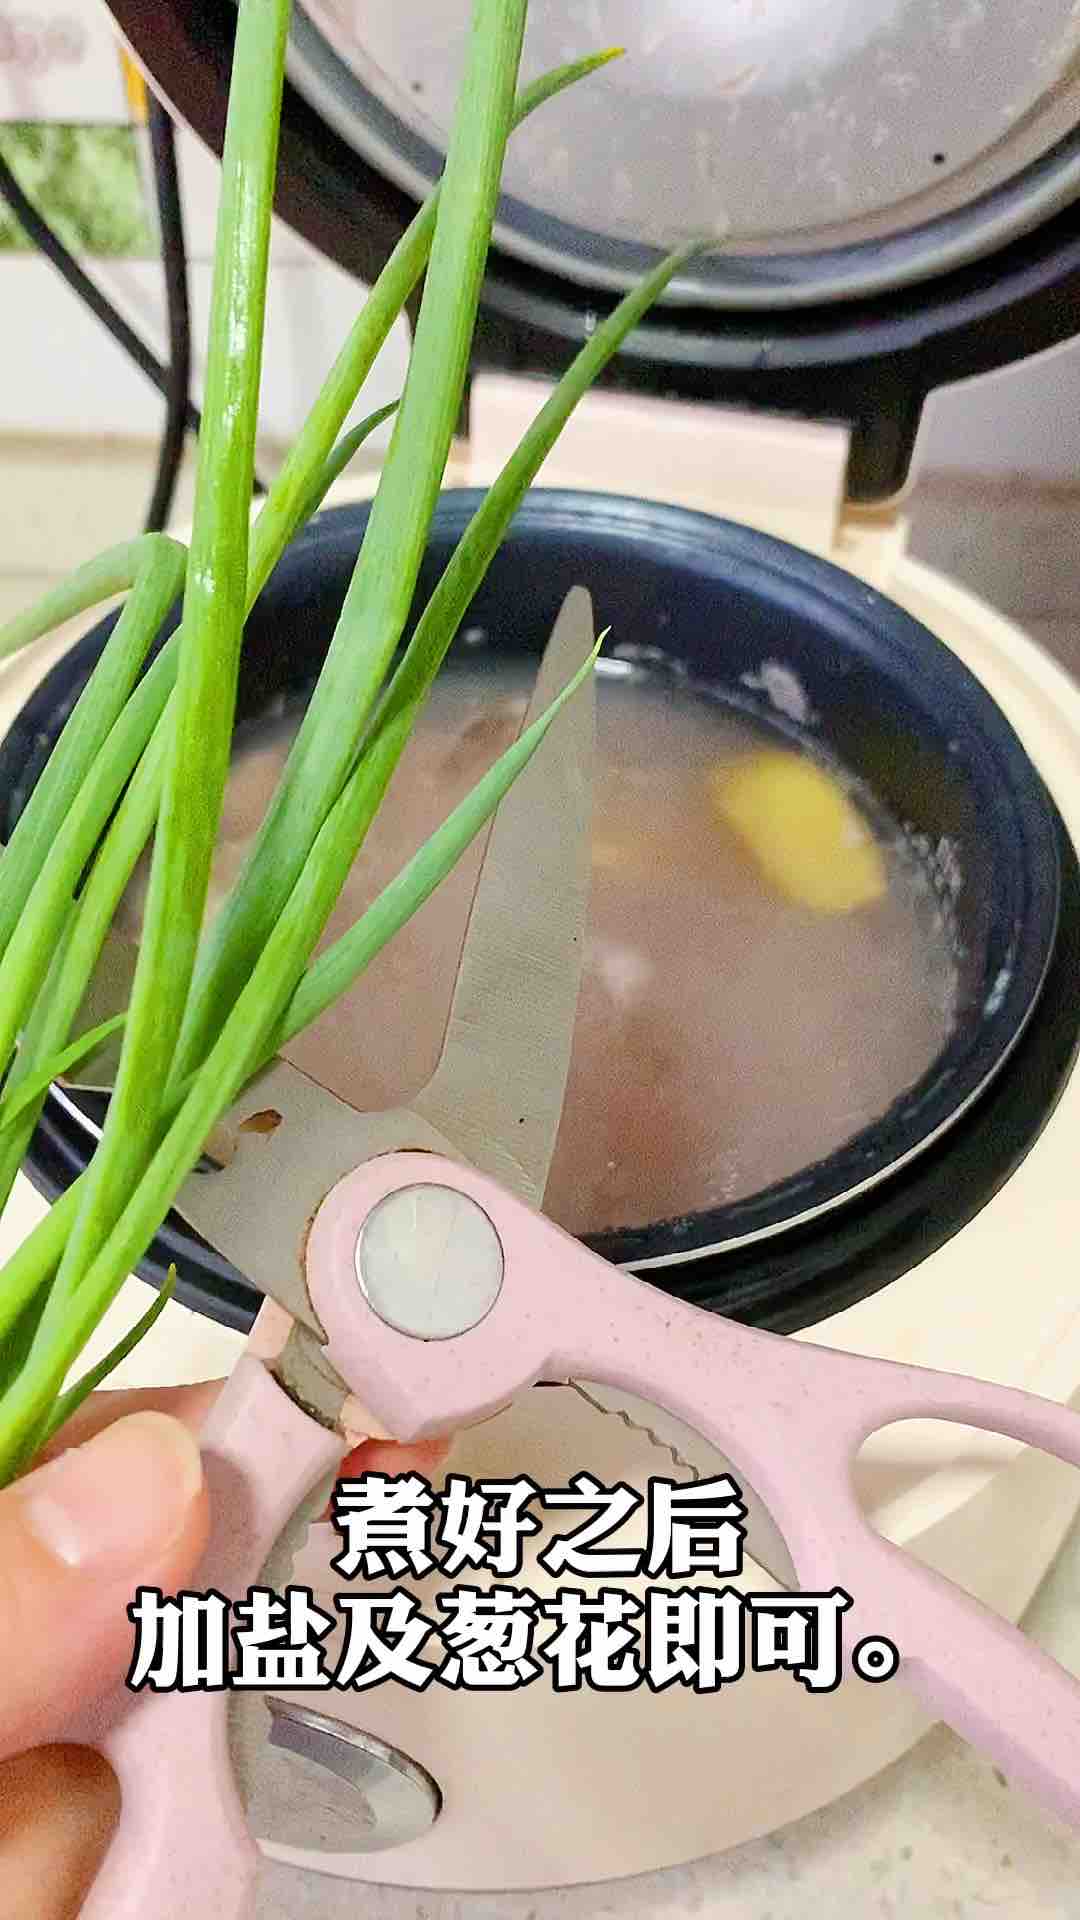 Shrimp Pork Congee recipe